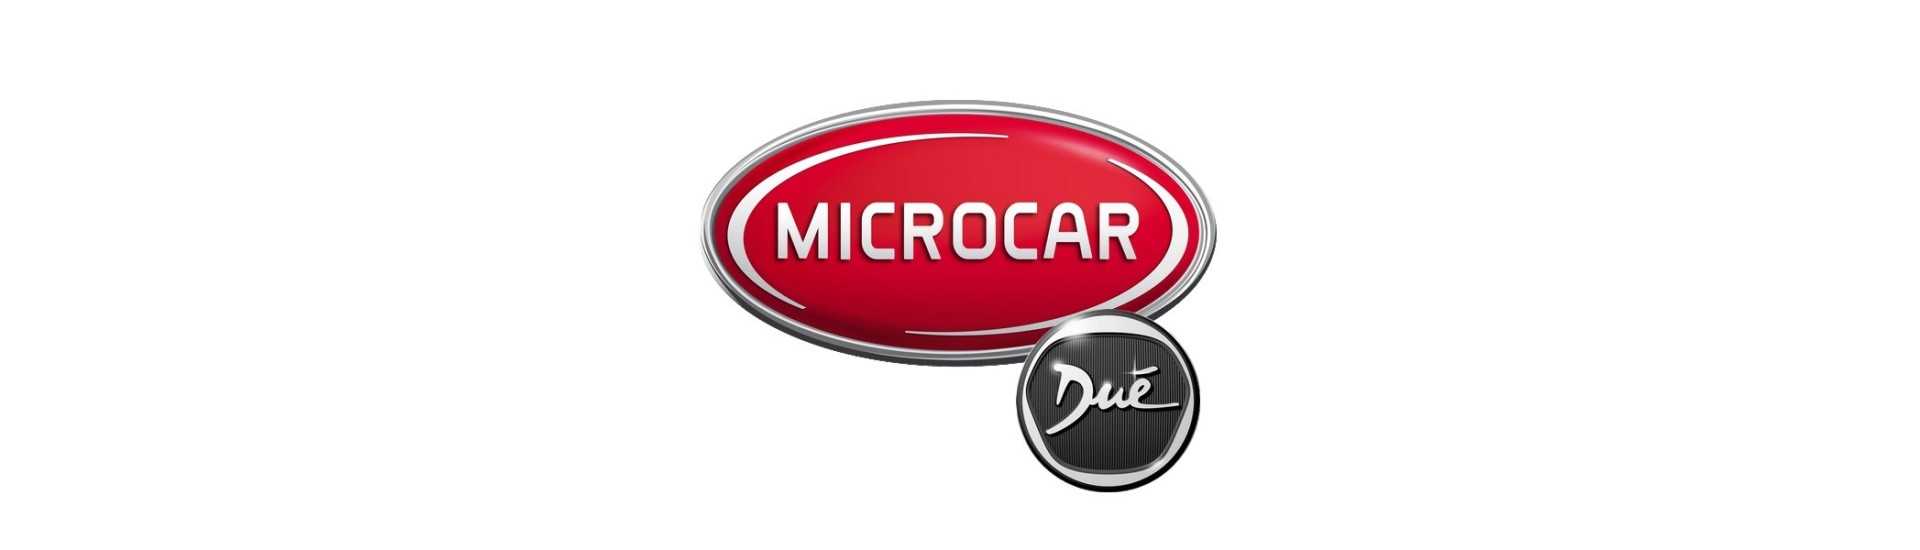 Neiman och fat till bästa prisbil utan tillstånd Microcar Dué